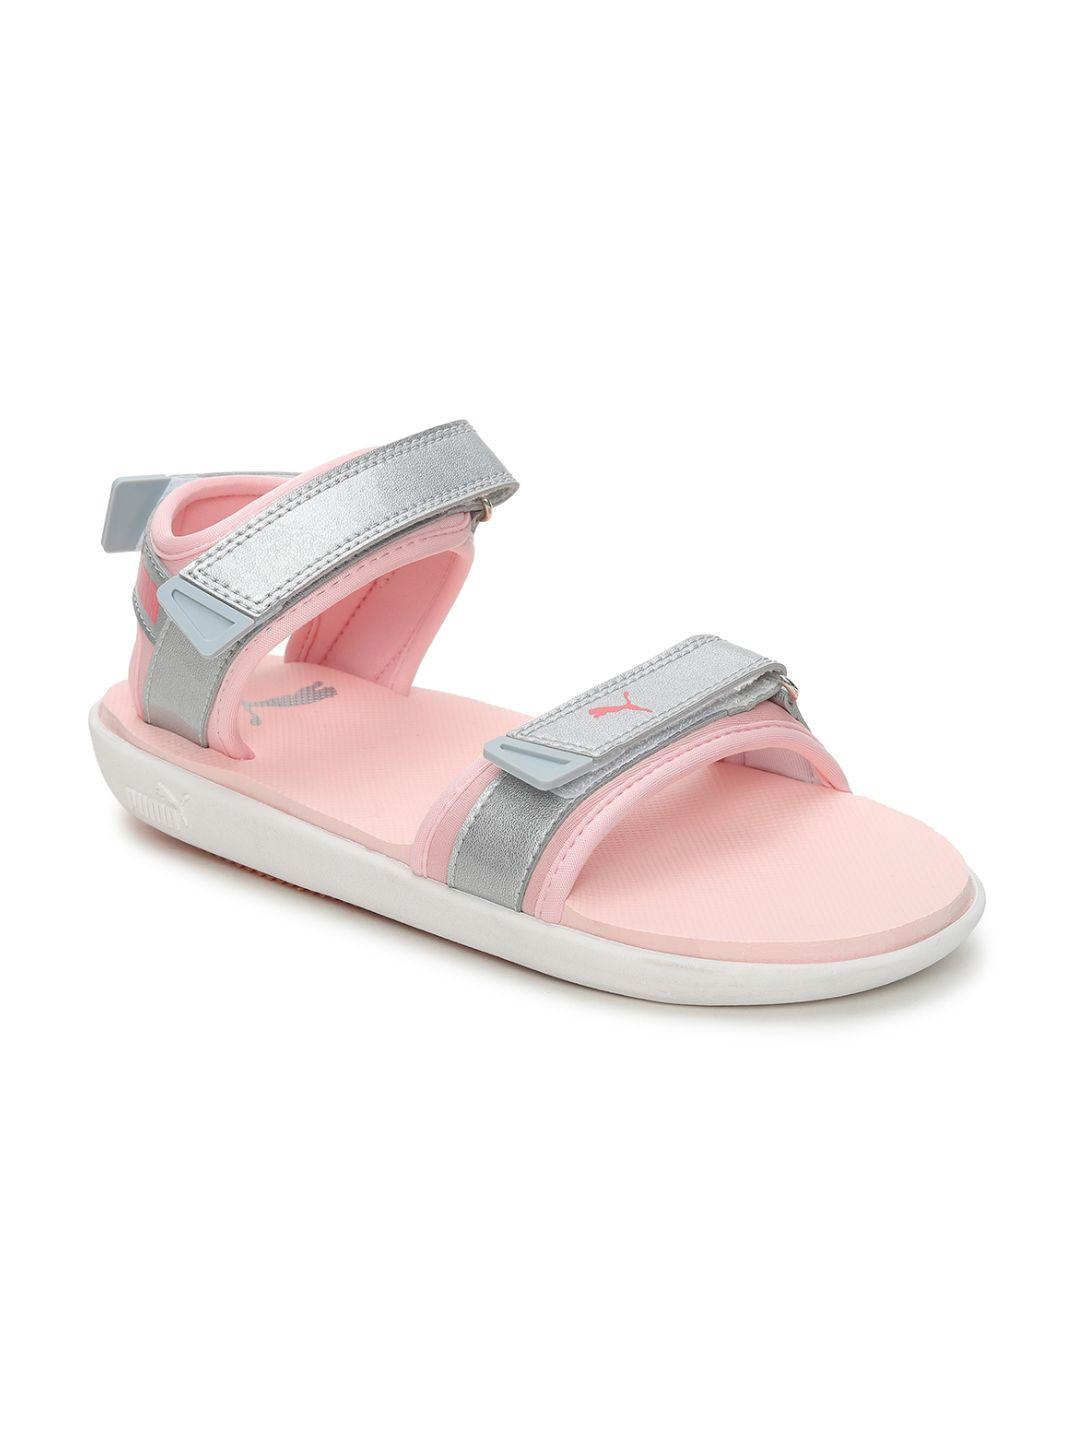 puma-women-pink-sports-sandals